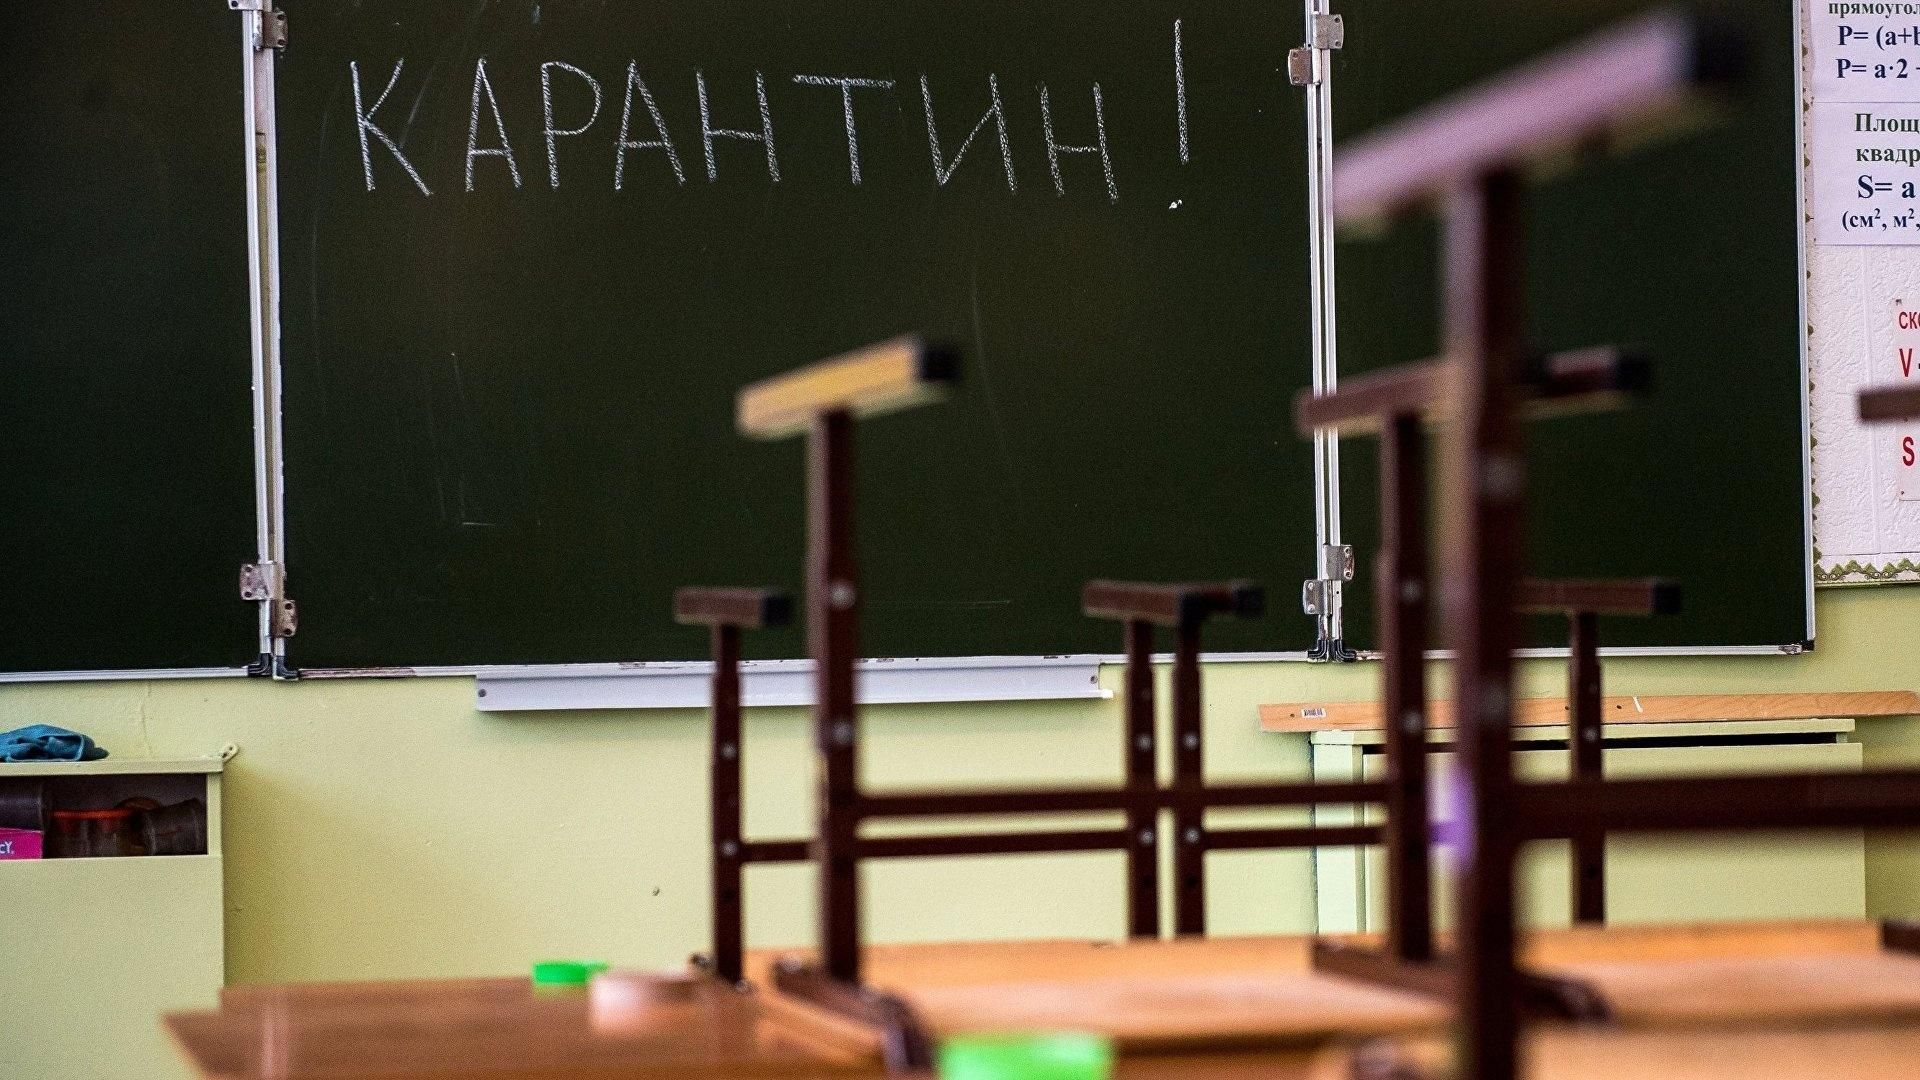 Ще два міста України закрили школи на карантин